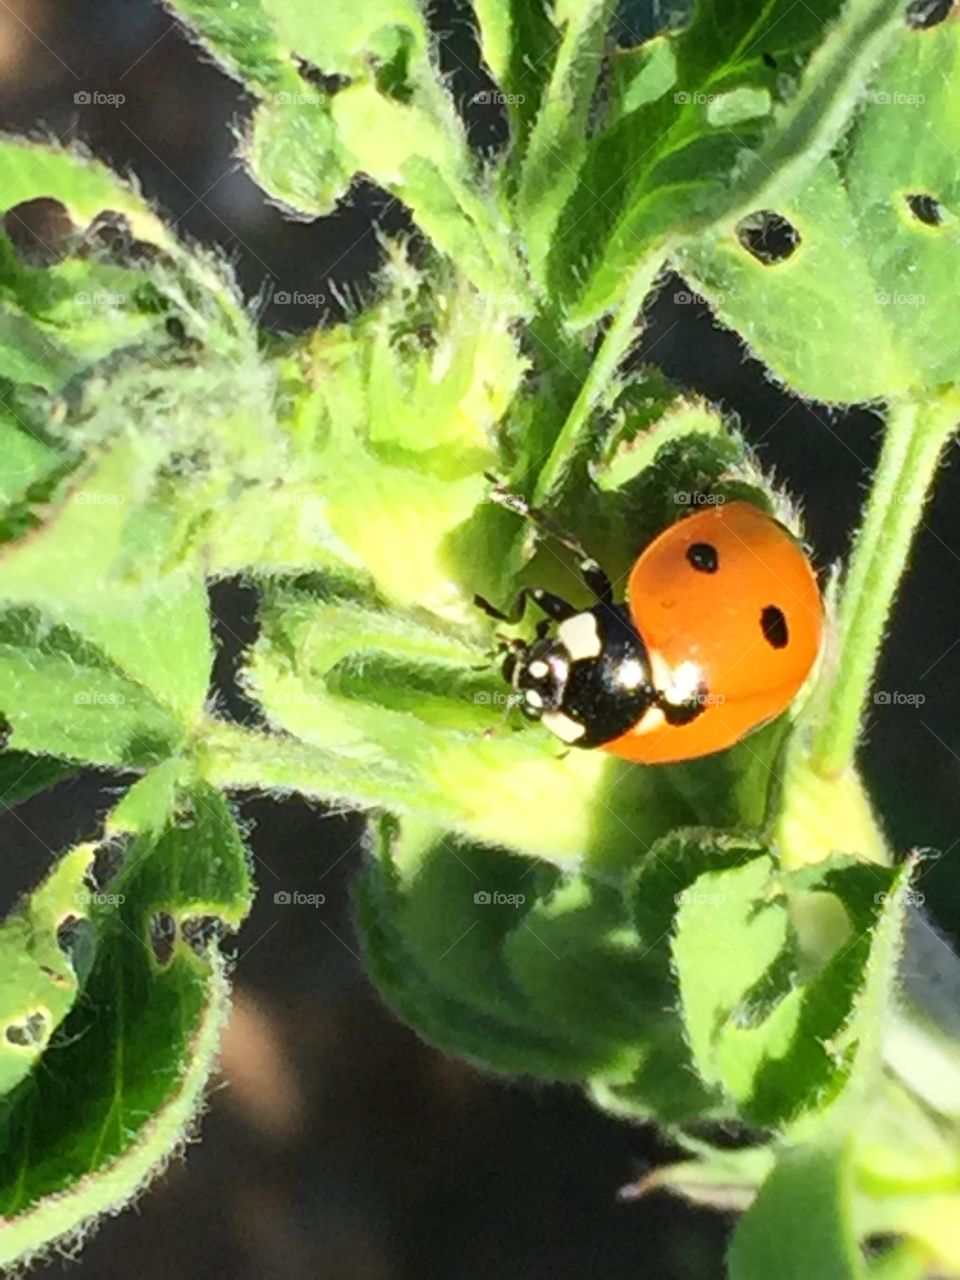 Ladybug up close 